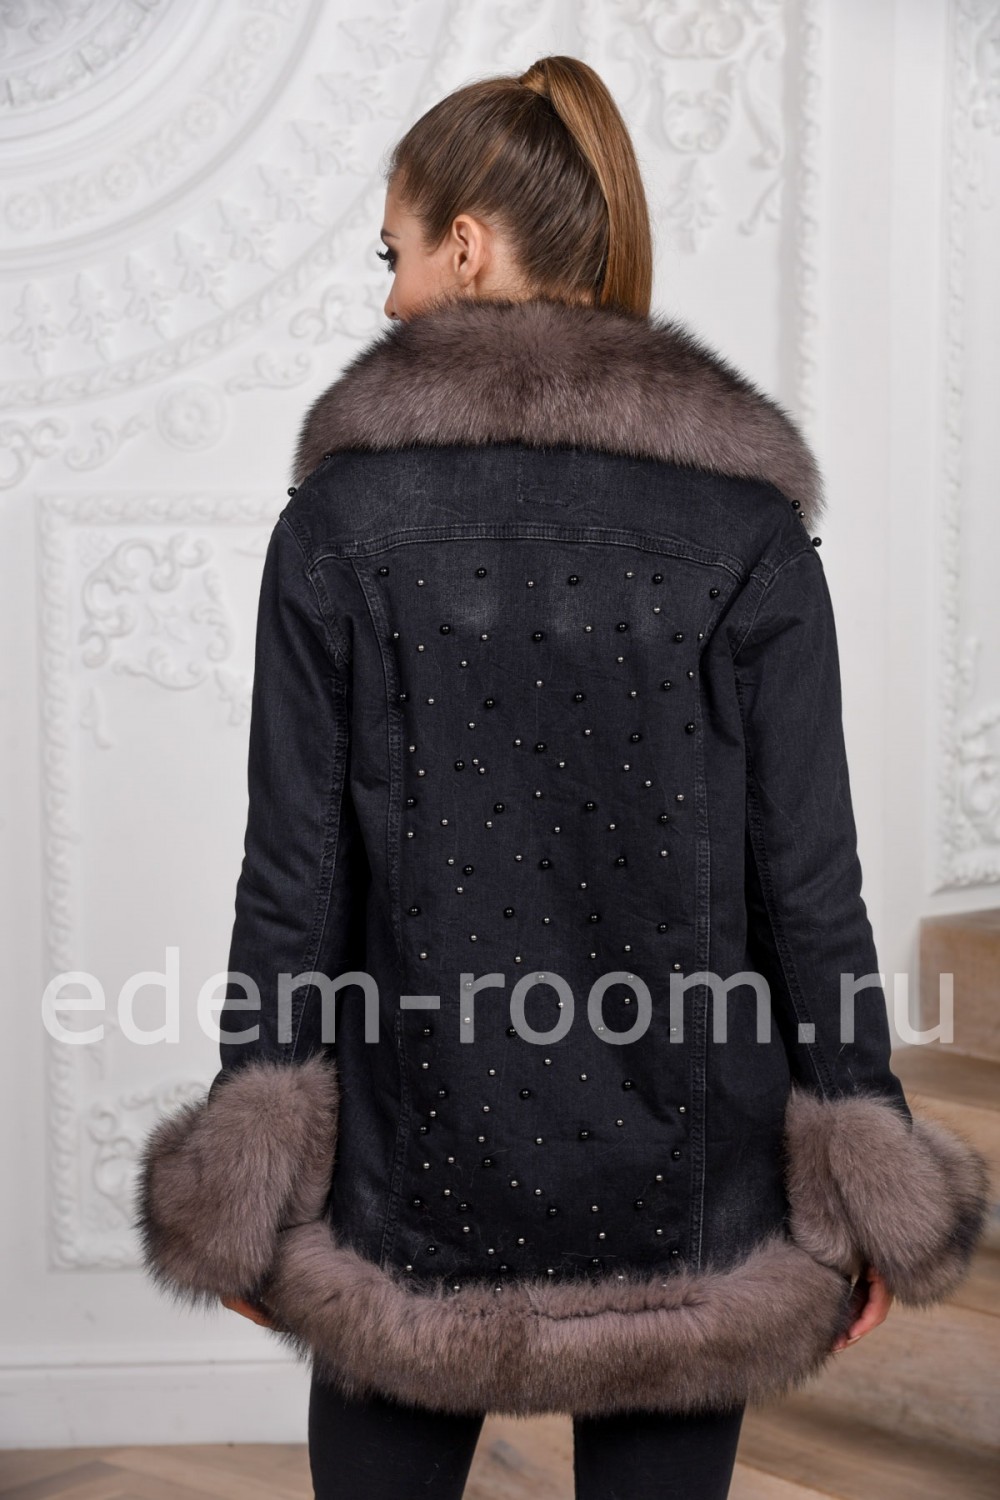 Межсезонная куртка с мехом финского песца